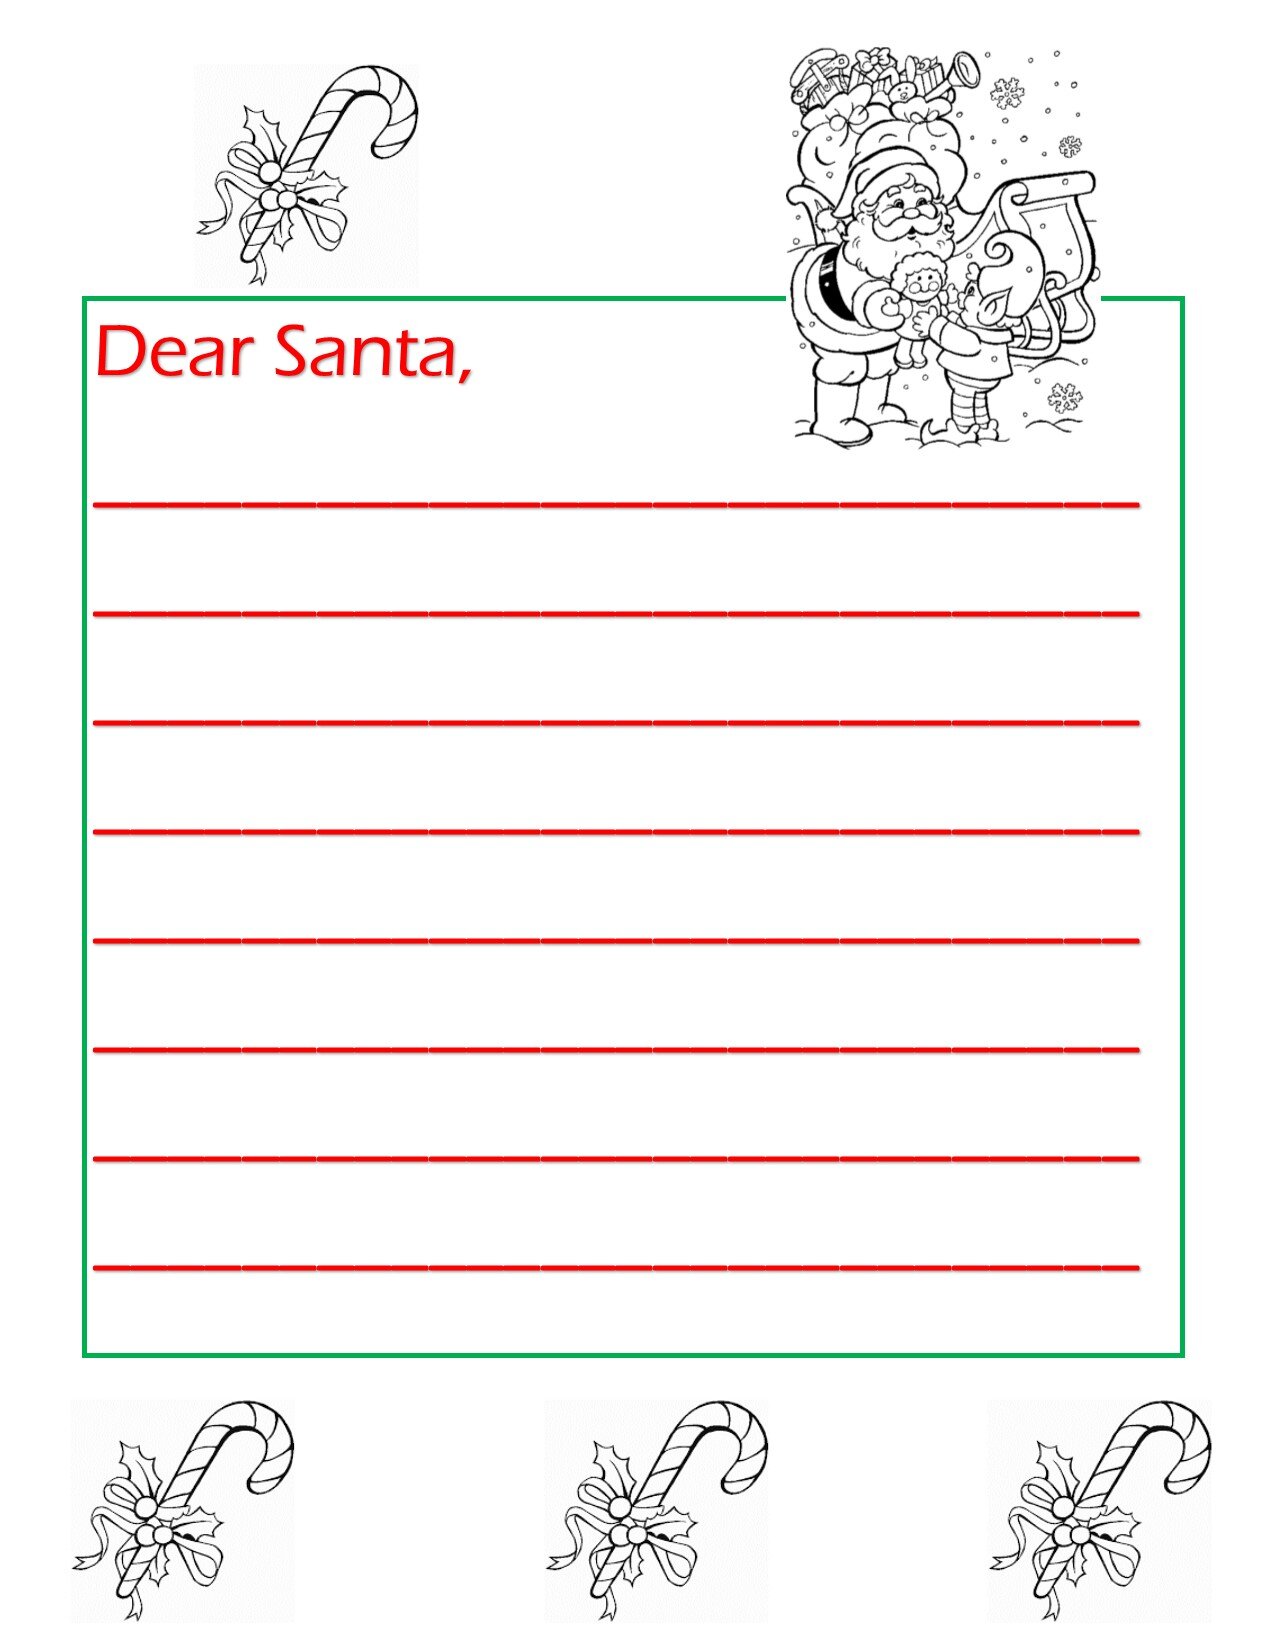 Letters to Santa 9.jpg